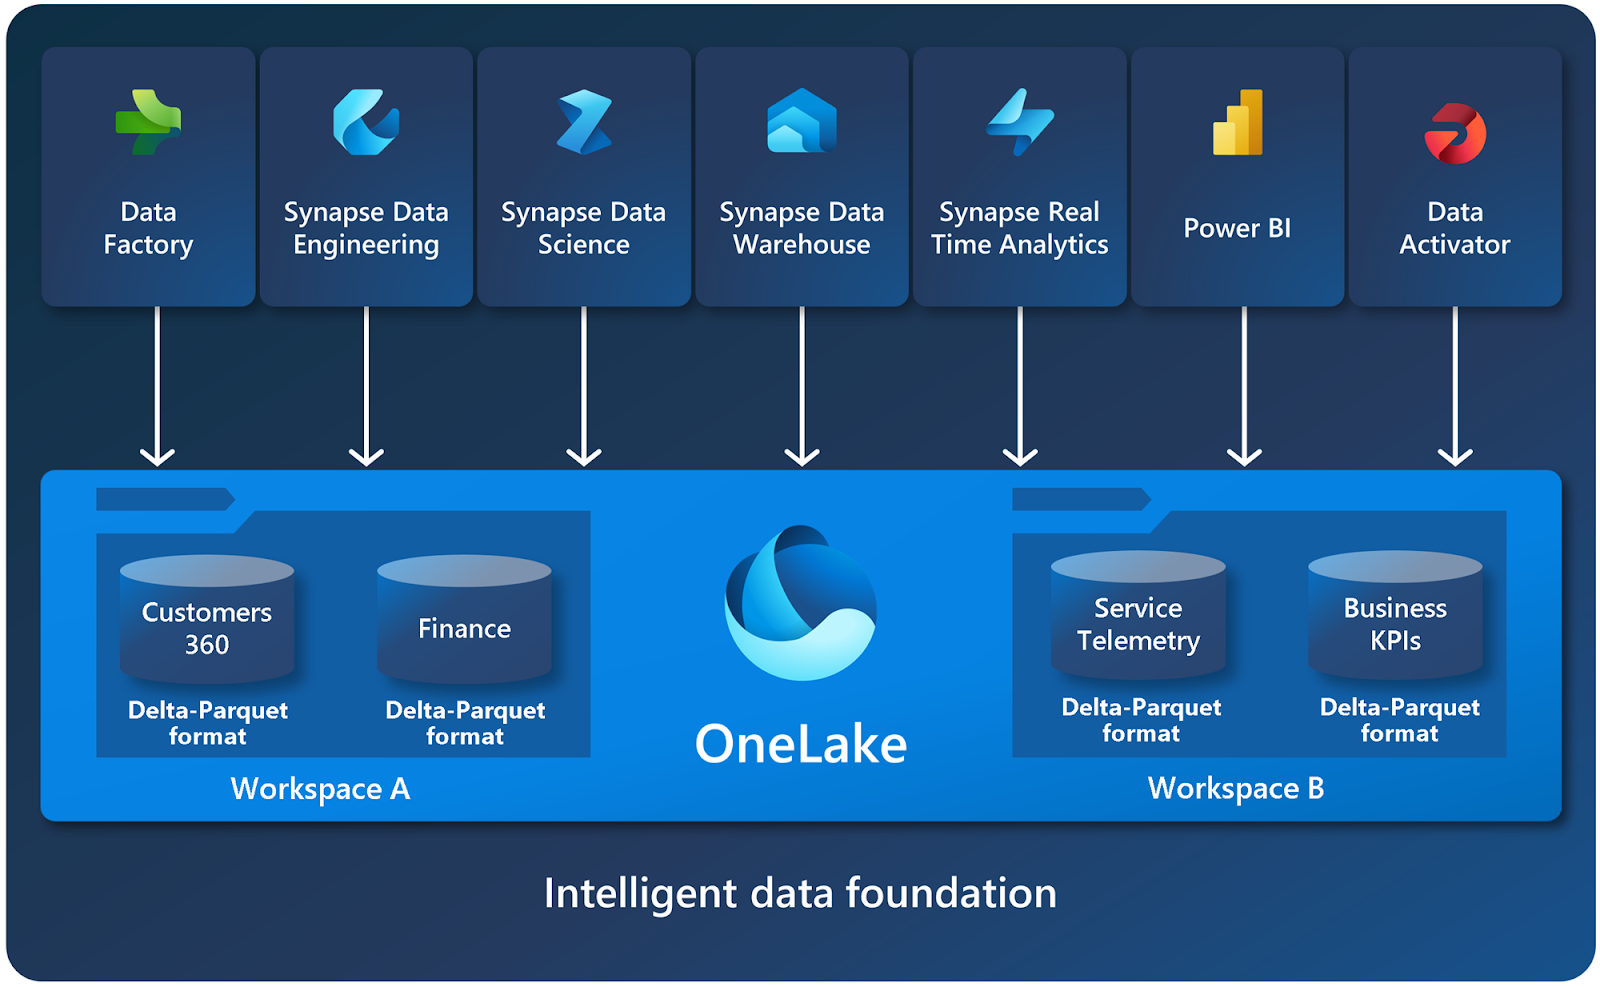 Sơ đồ thể hiện chức năng và cấu trúc của OneLake.